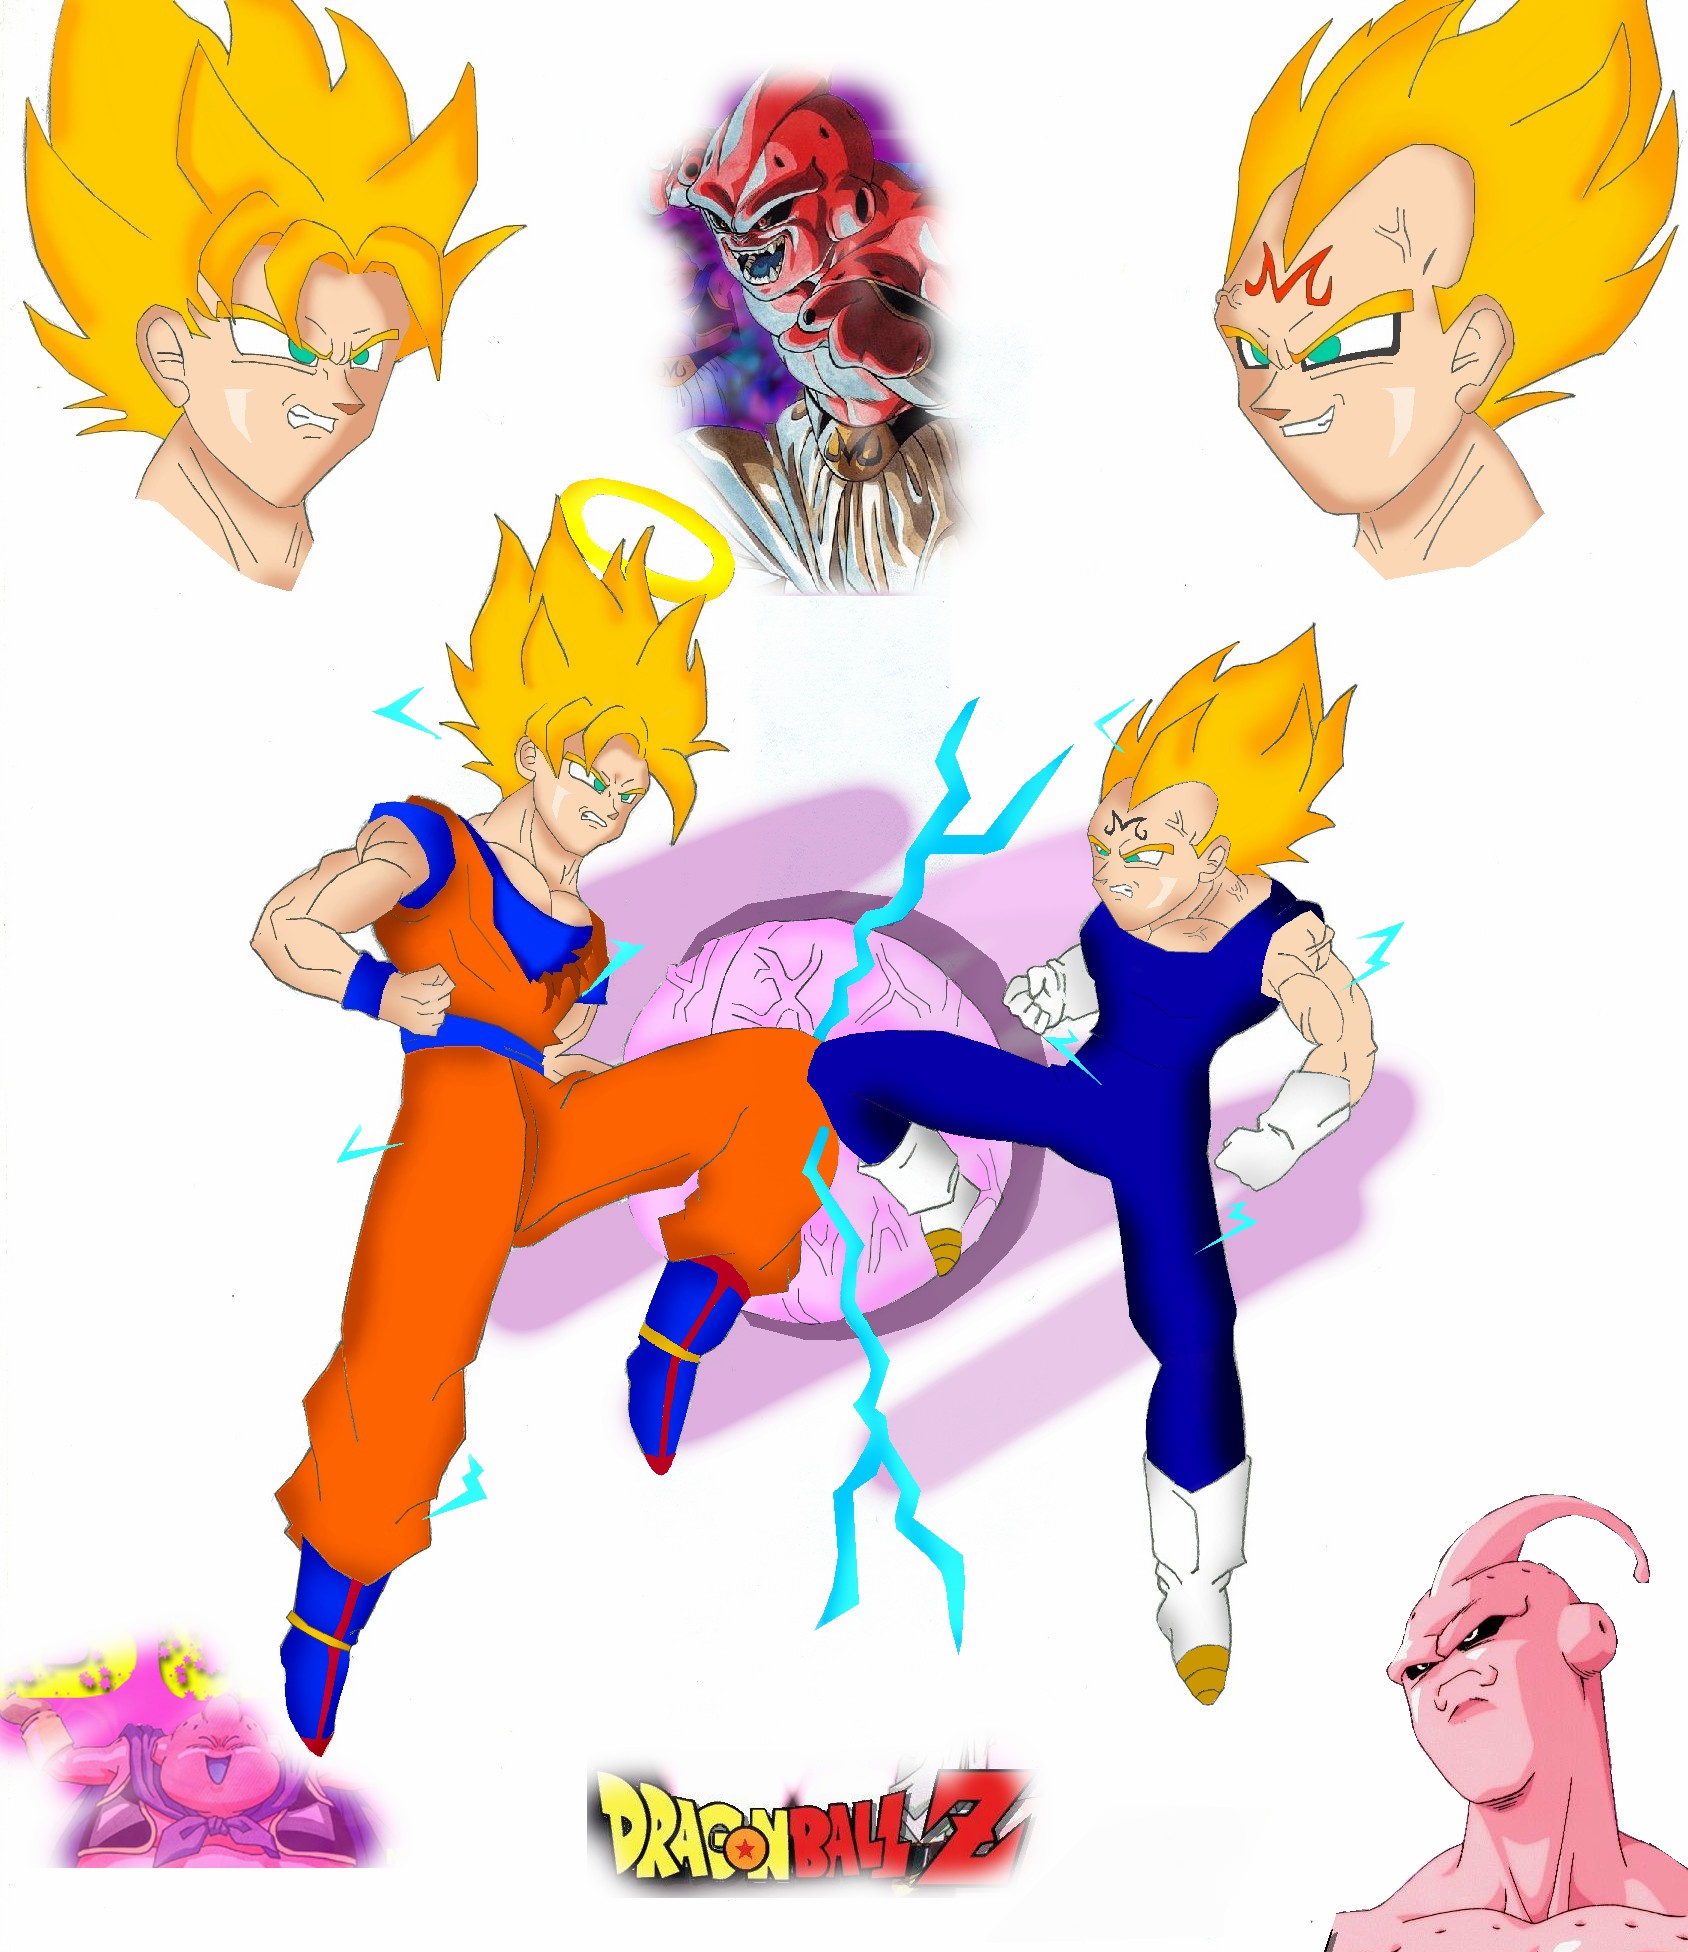 Goku Vs Majin Vegeta and Buu by SonGoku17 on DeviantArt